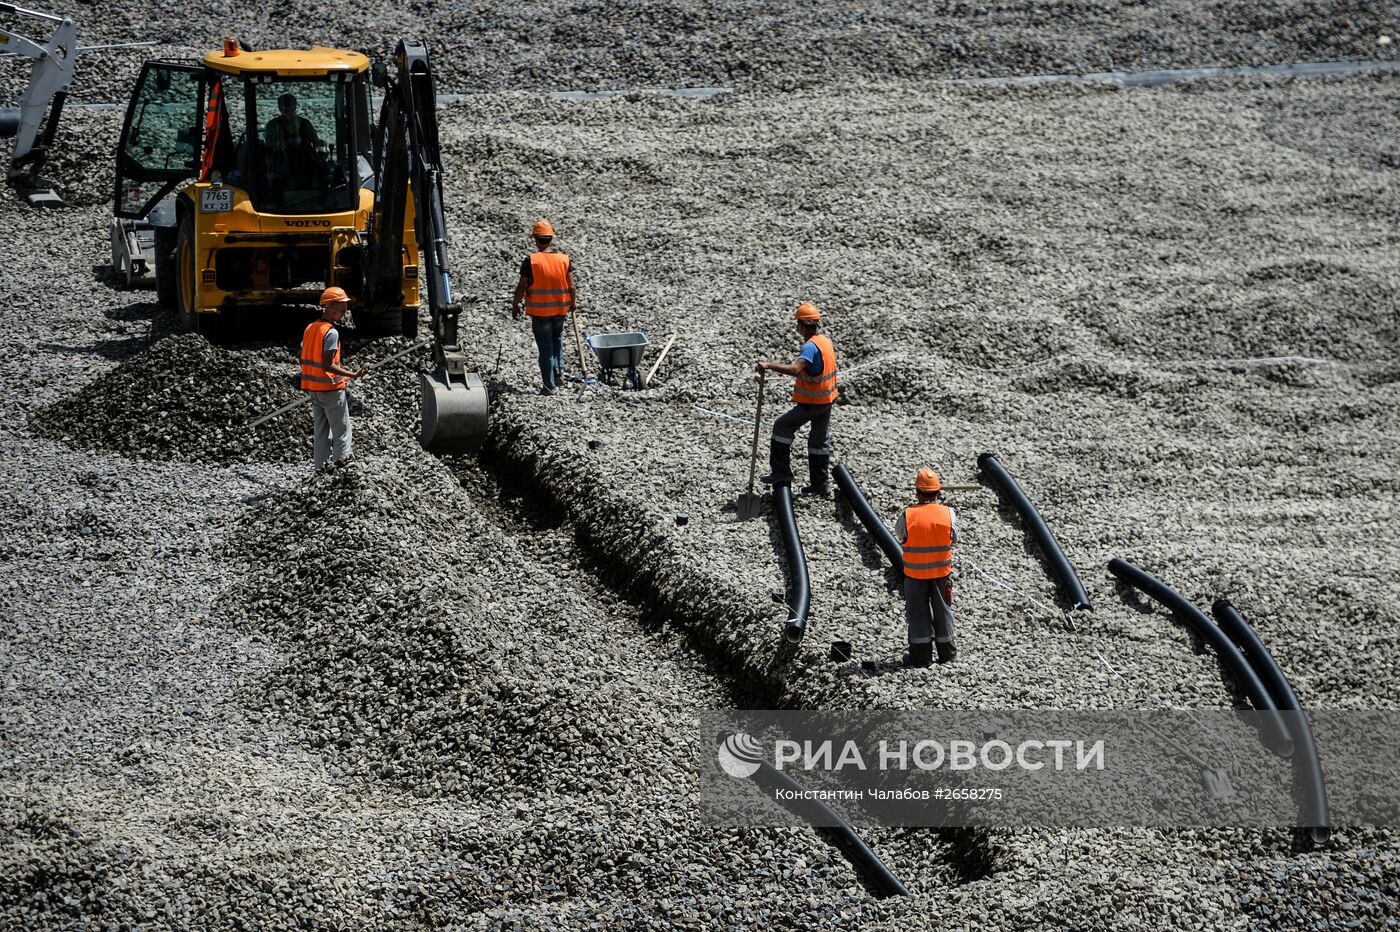 Реконструкция стадиона "Фишт" к ЧМ-2018